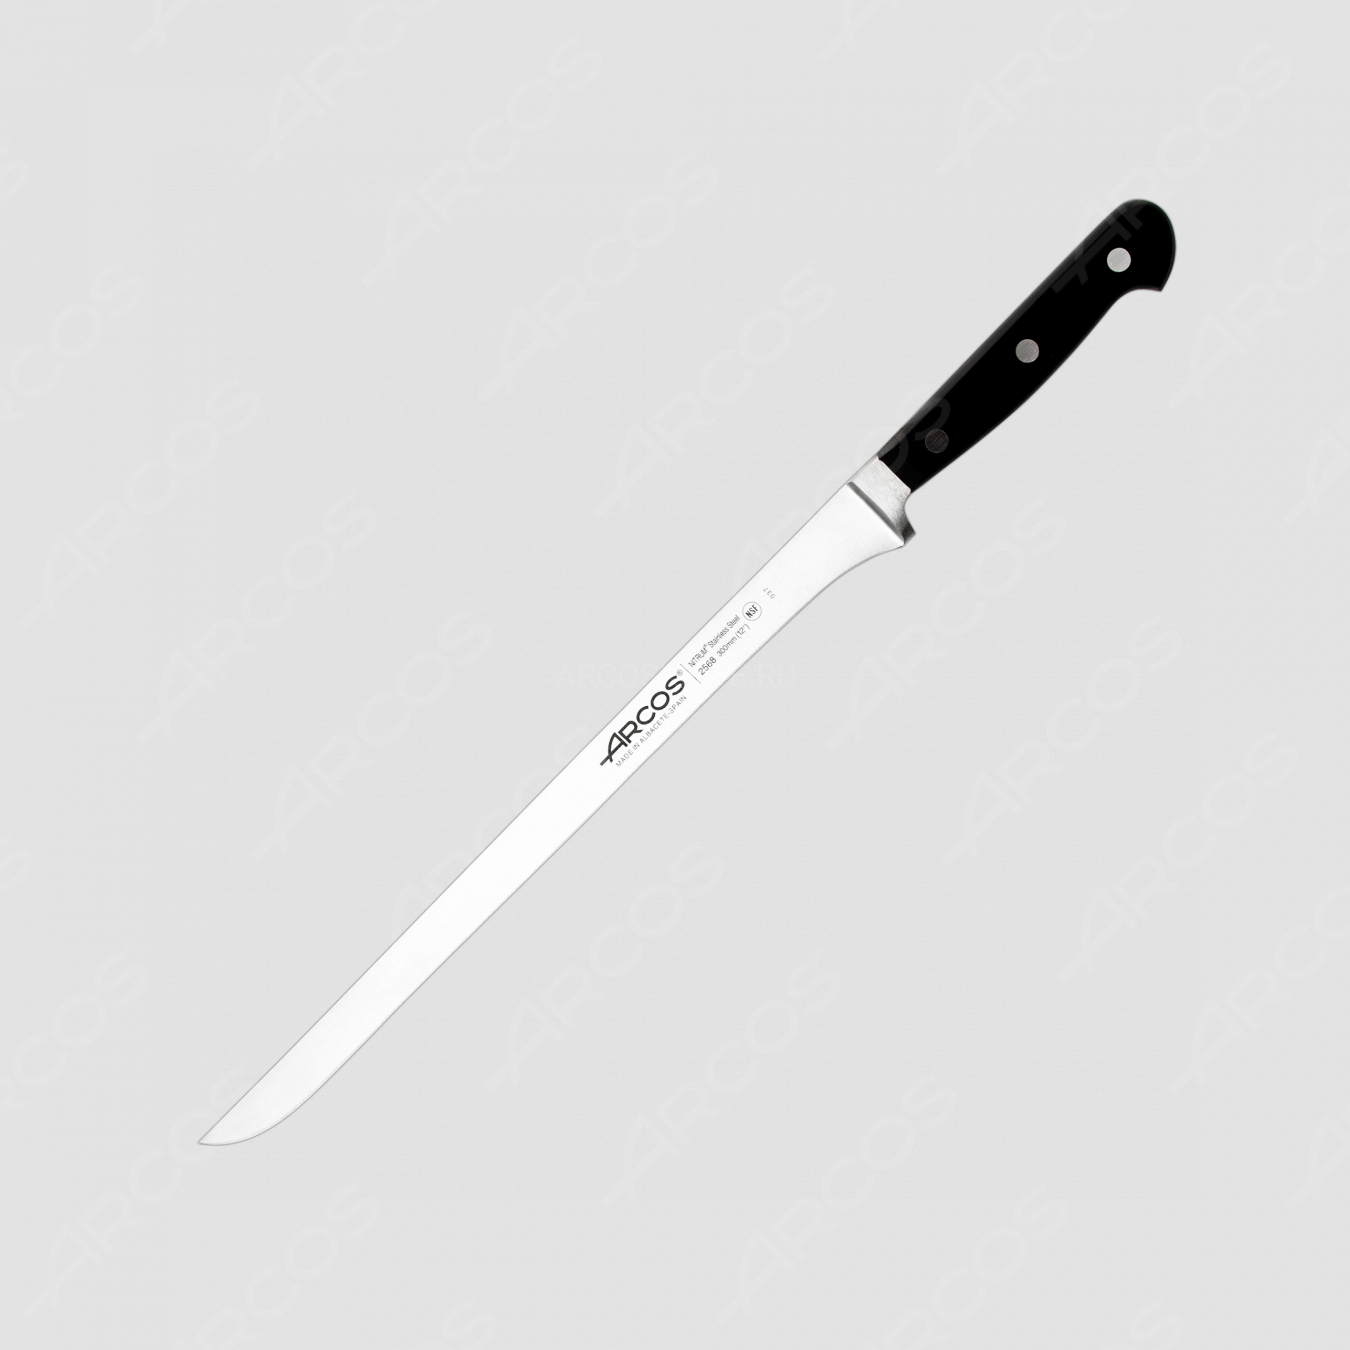 Нож кухонный, для тонкой нарезки 30 см, серия Clasica, ARCOS, Испания